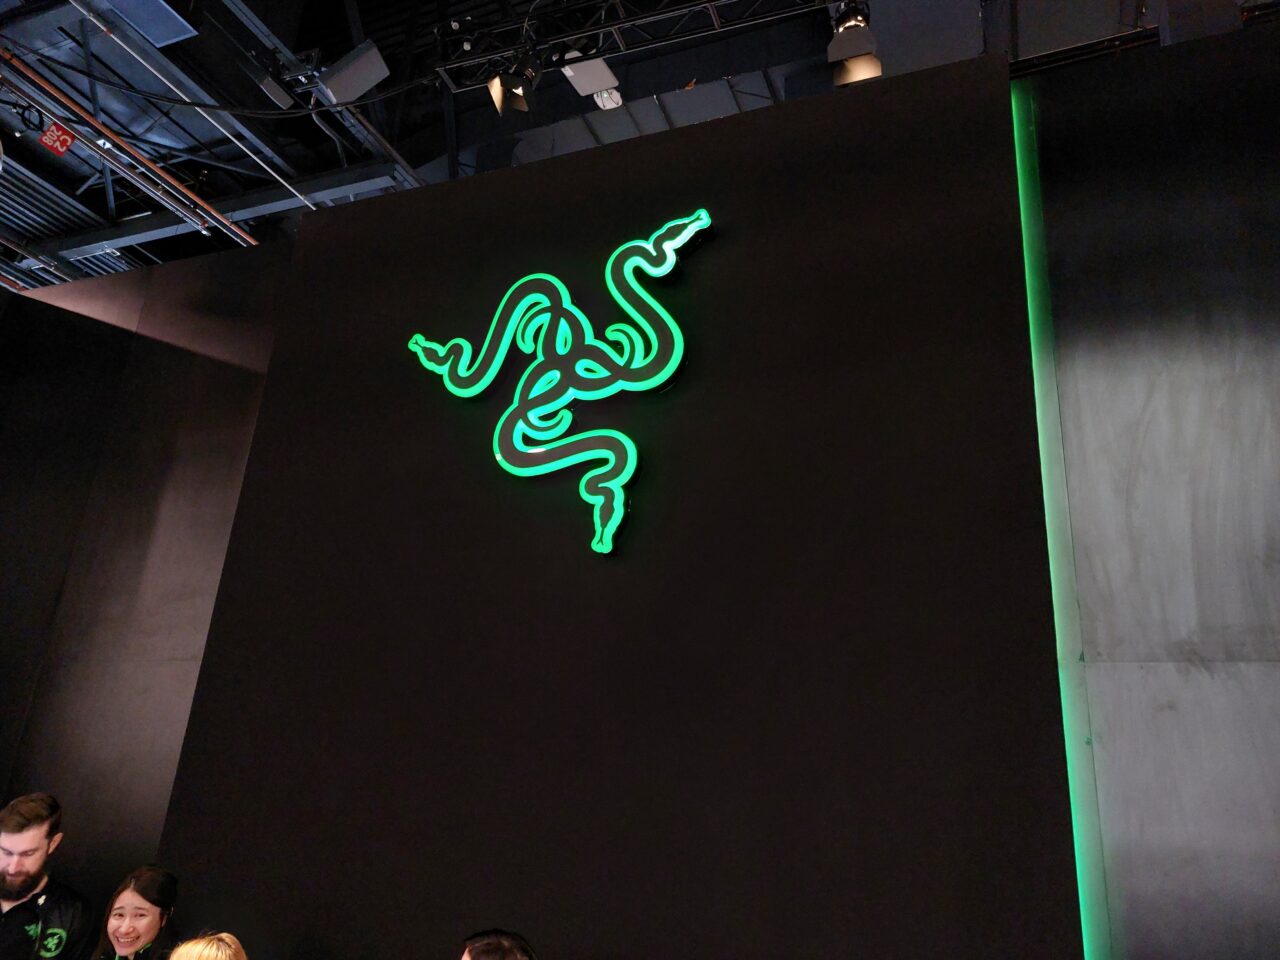 Zielone neonowe logo Razer na ciemnym tle, z ludźmi stojącymi poniżej.